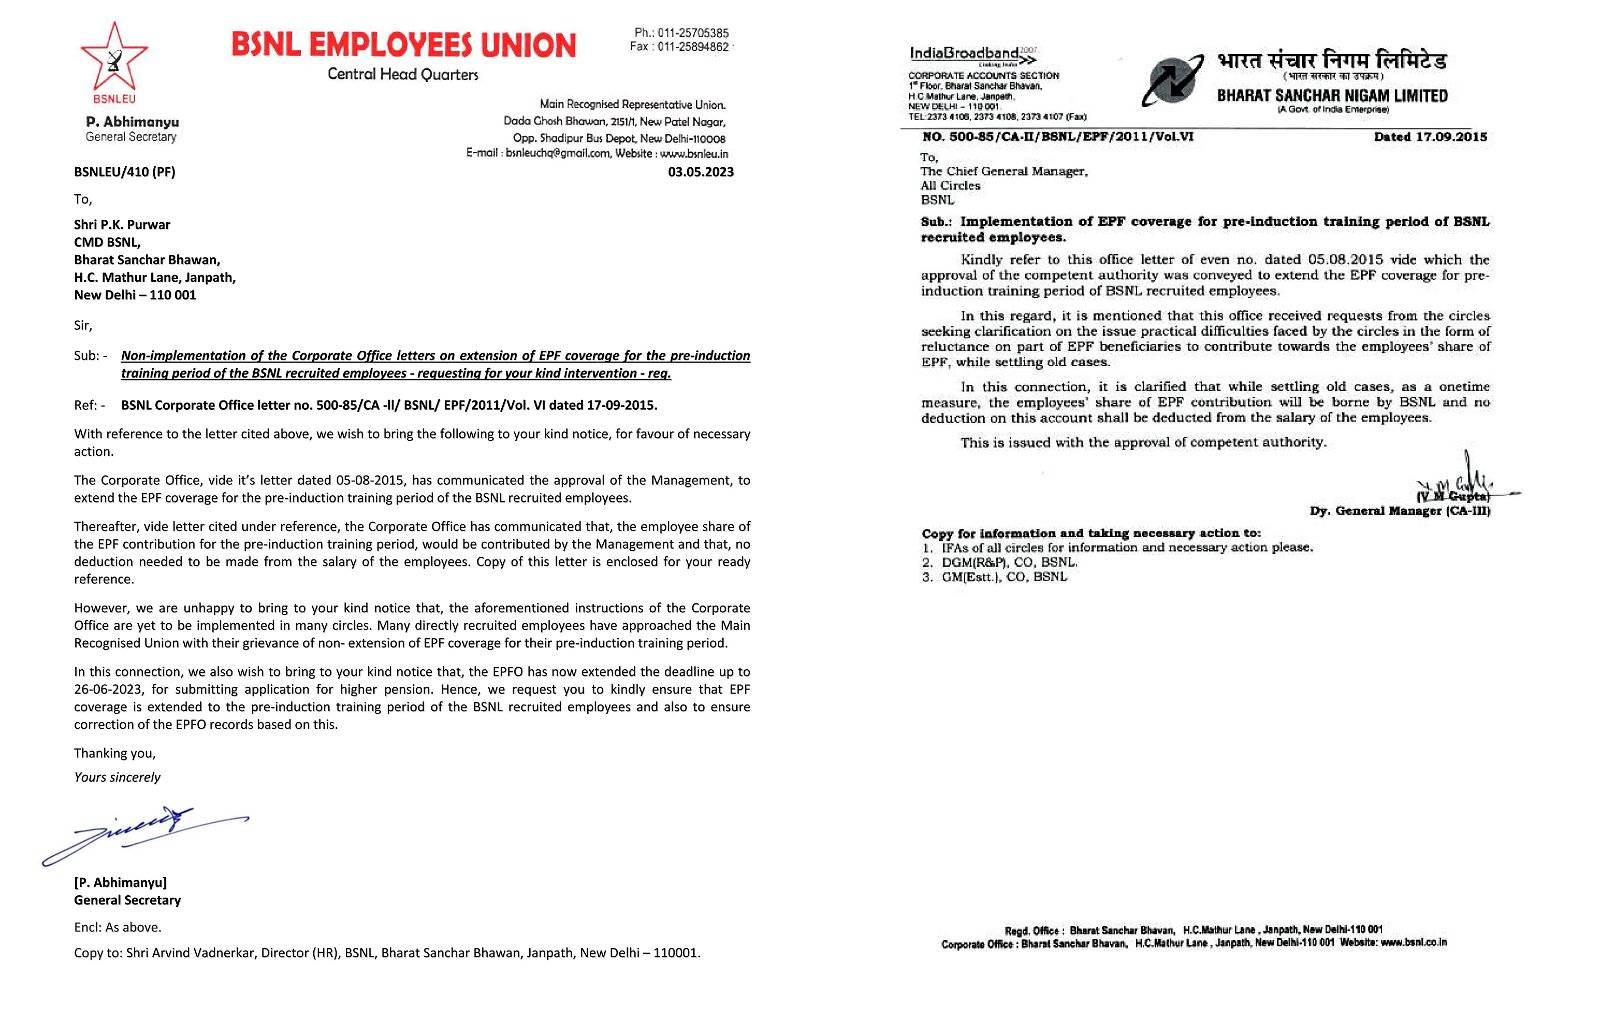 *प्री-इंडक्शन ट्रेनिंग कालावधीसाठी EPF कव्हरेज वाढवणे – कॉर्पोरेट ऑफिसच्या सूचनांची अंमलबजावणी न करणे- BSNLEU ने CMD BSNL यांना पत्र लिहून त्यांच्या हस्तक्षेपाची मागणी केली.* Image 